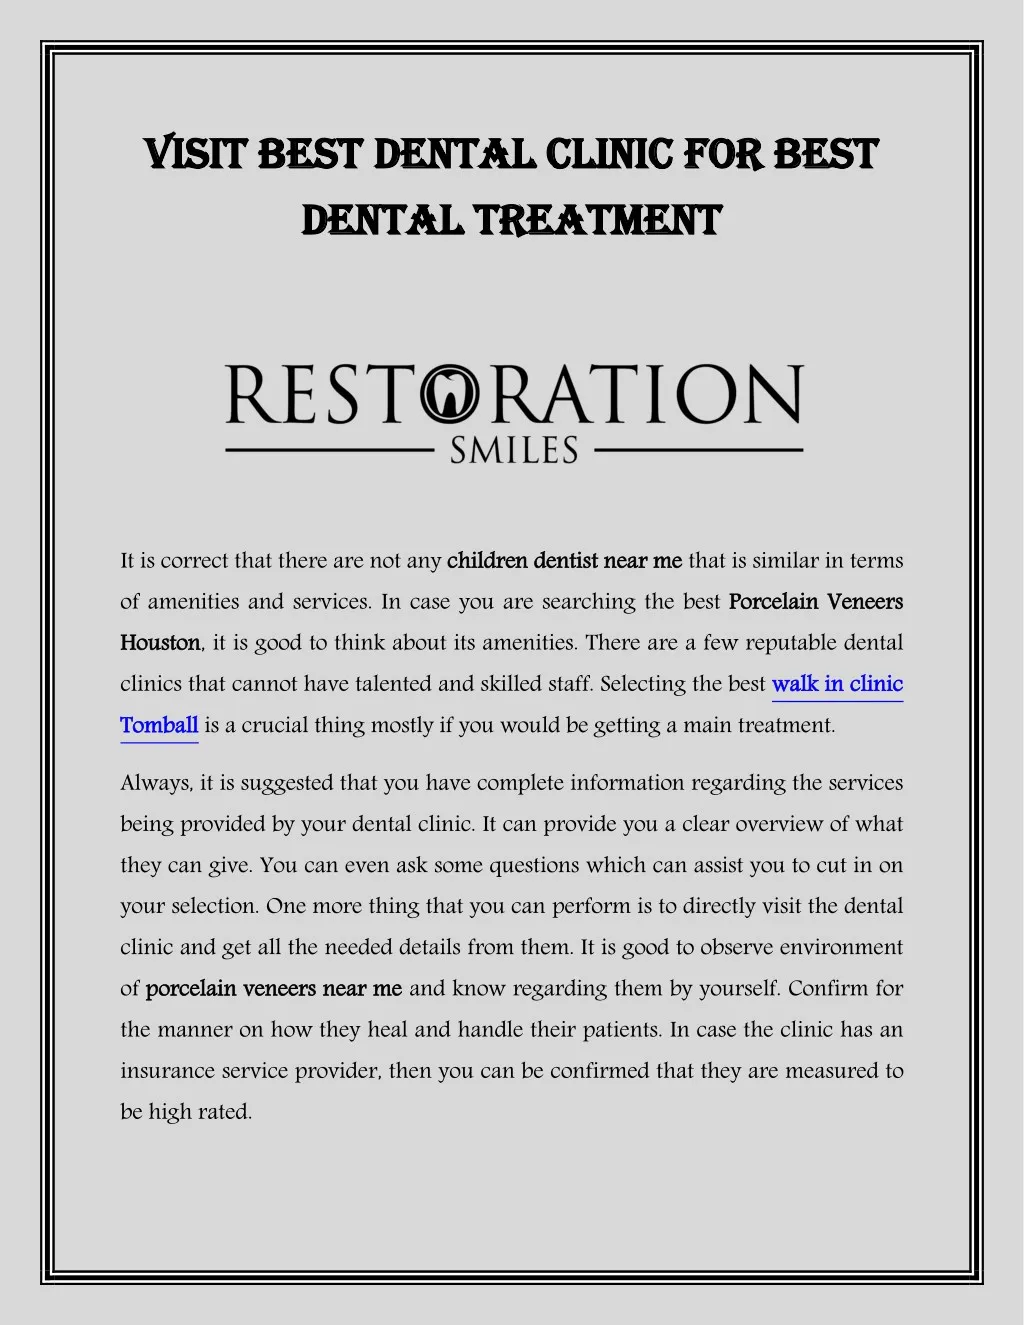 visi visit best den t best dental dental t dental